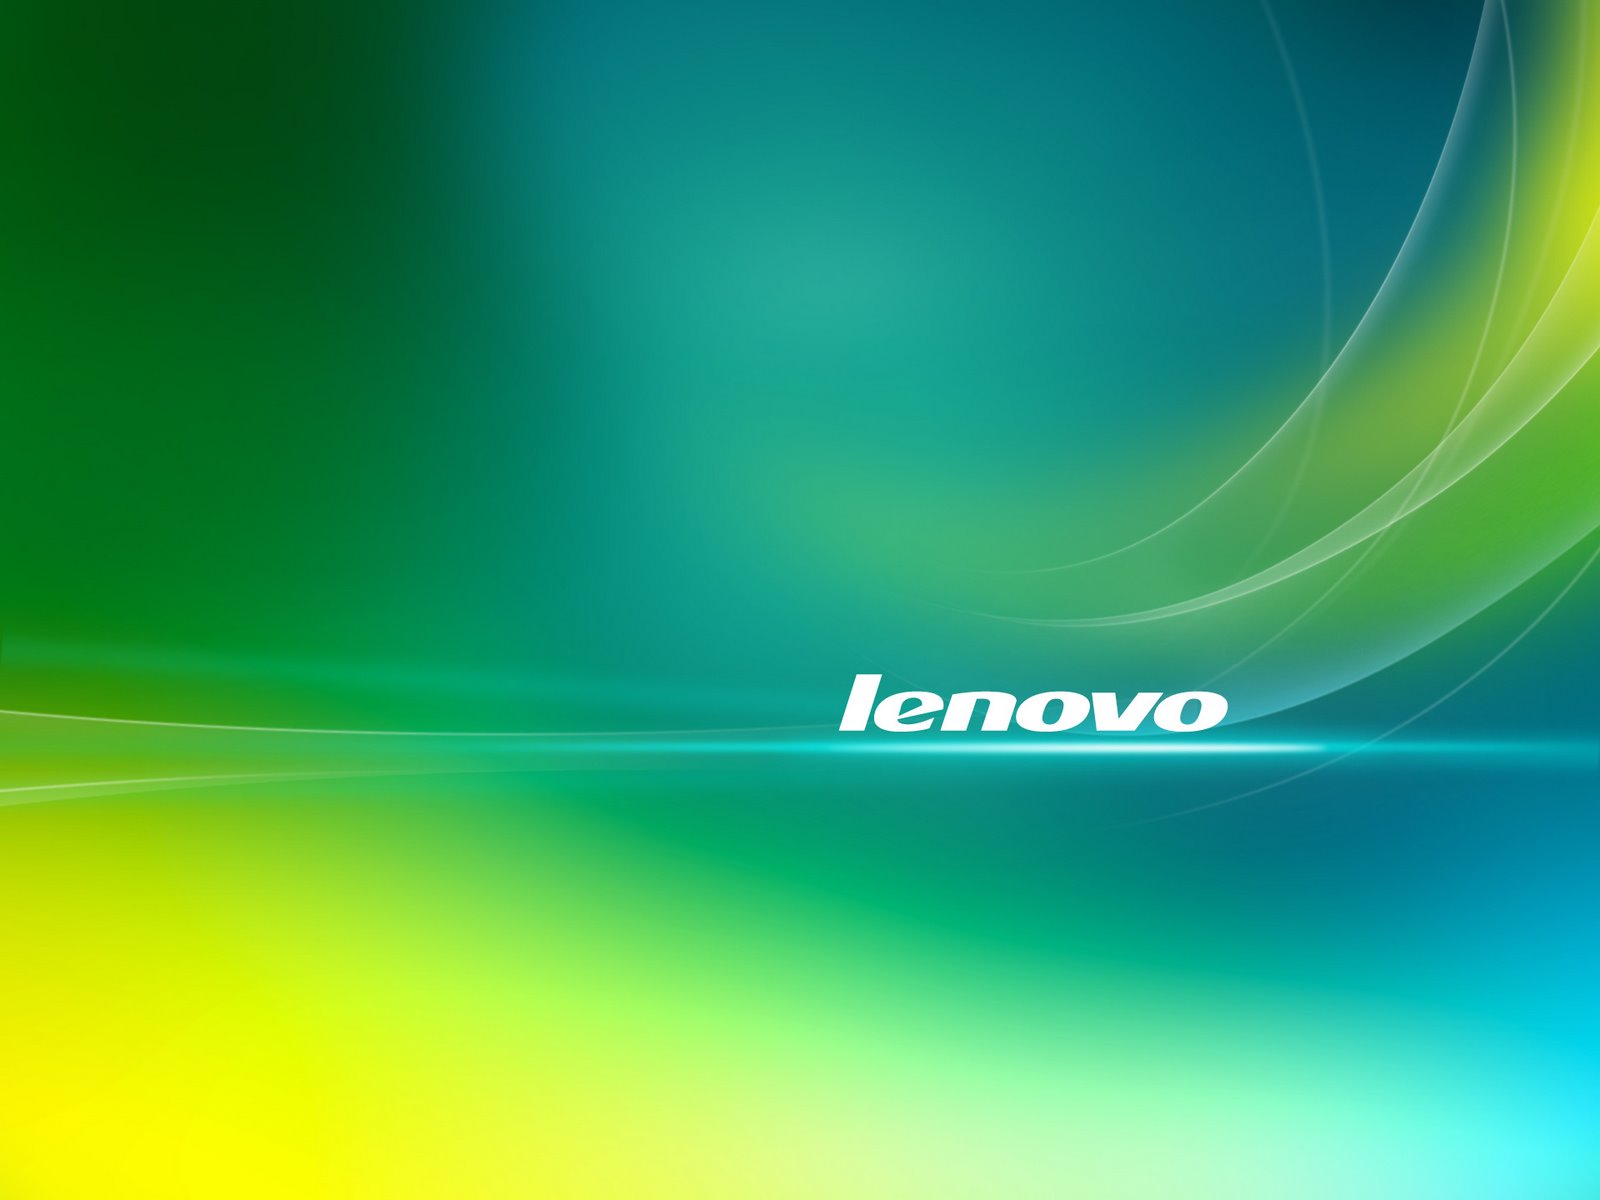 Lenovo Technology Wallpaper Full HD